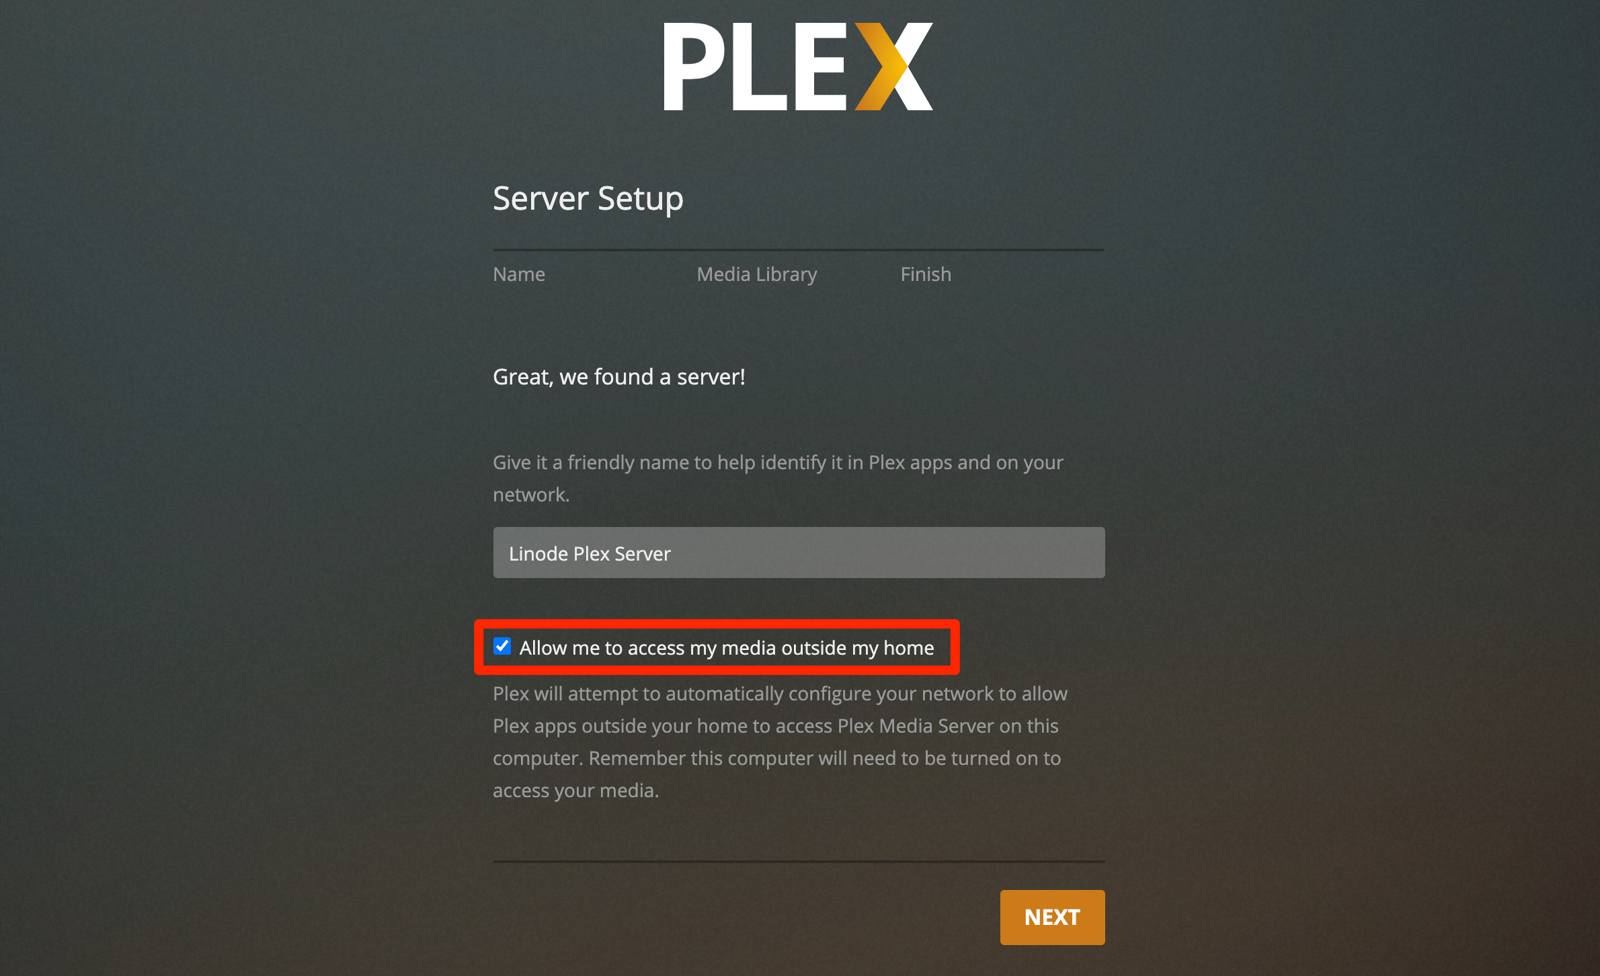 Plex Server Setup - Name